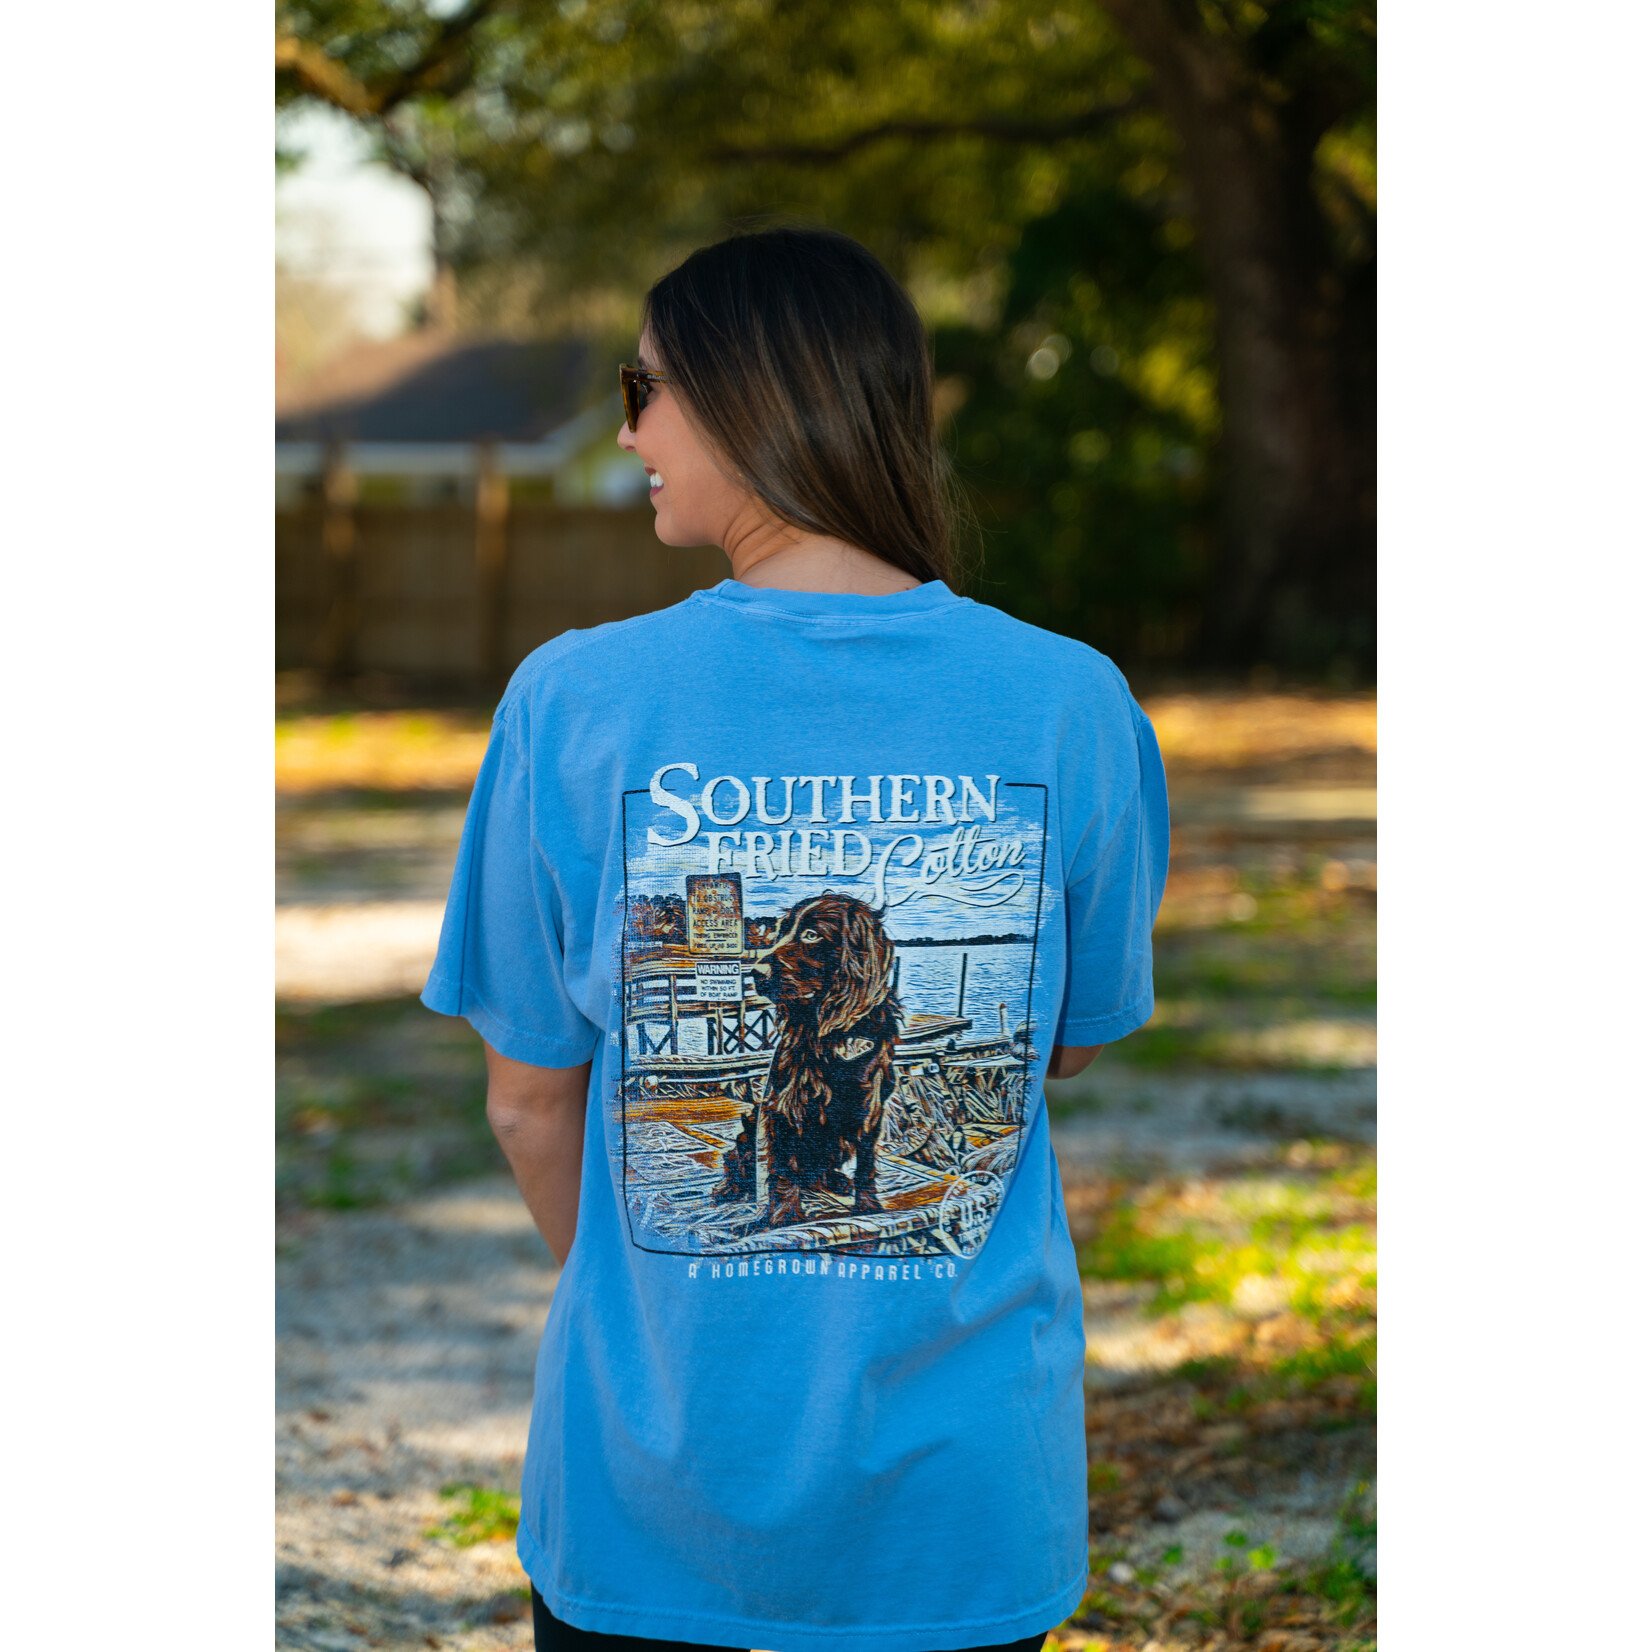 Southern Fried Cotton Southern Fried Cotton Hank Boykin S/S TEE Shirt